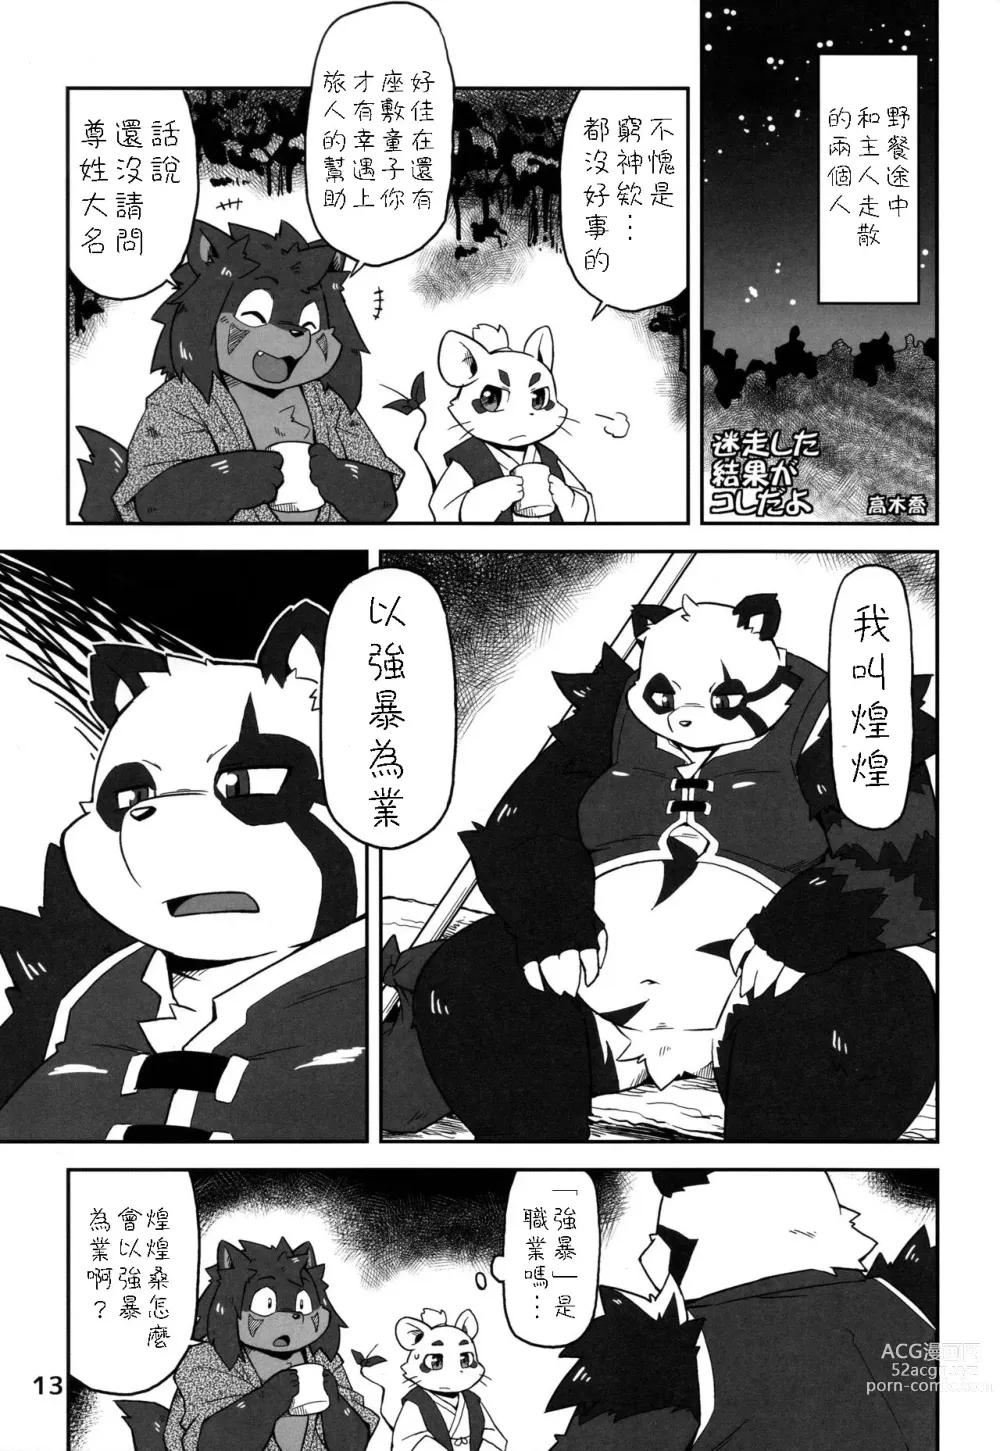 Page 12 of doujinshi Moero Fanfan